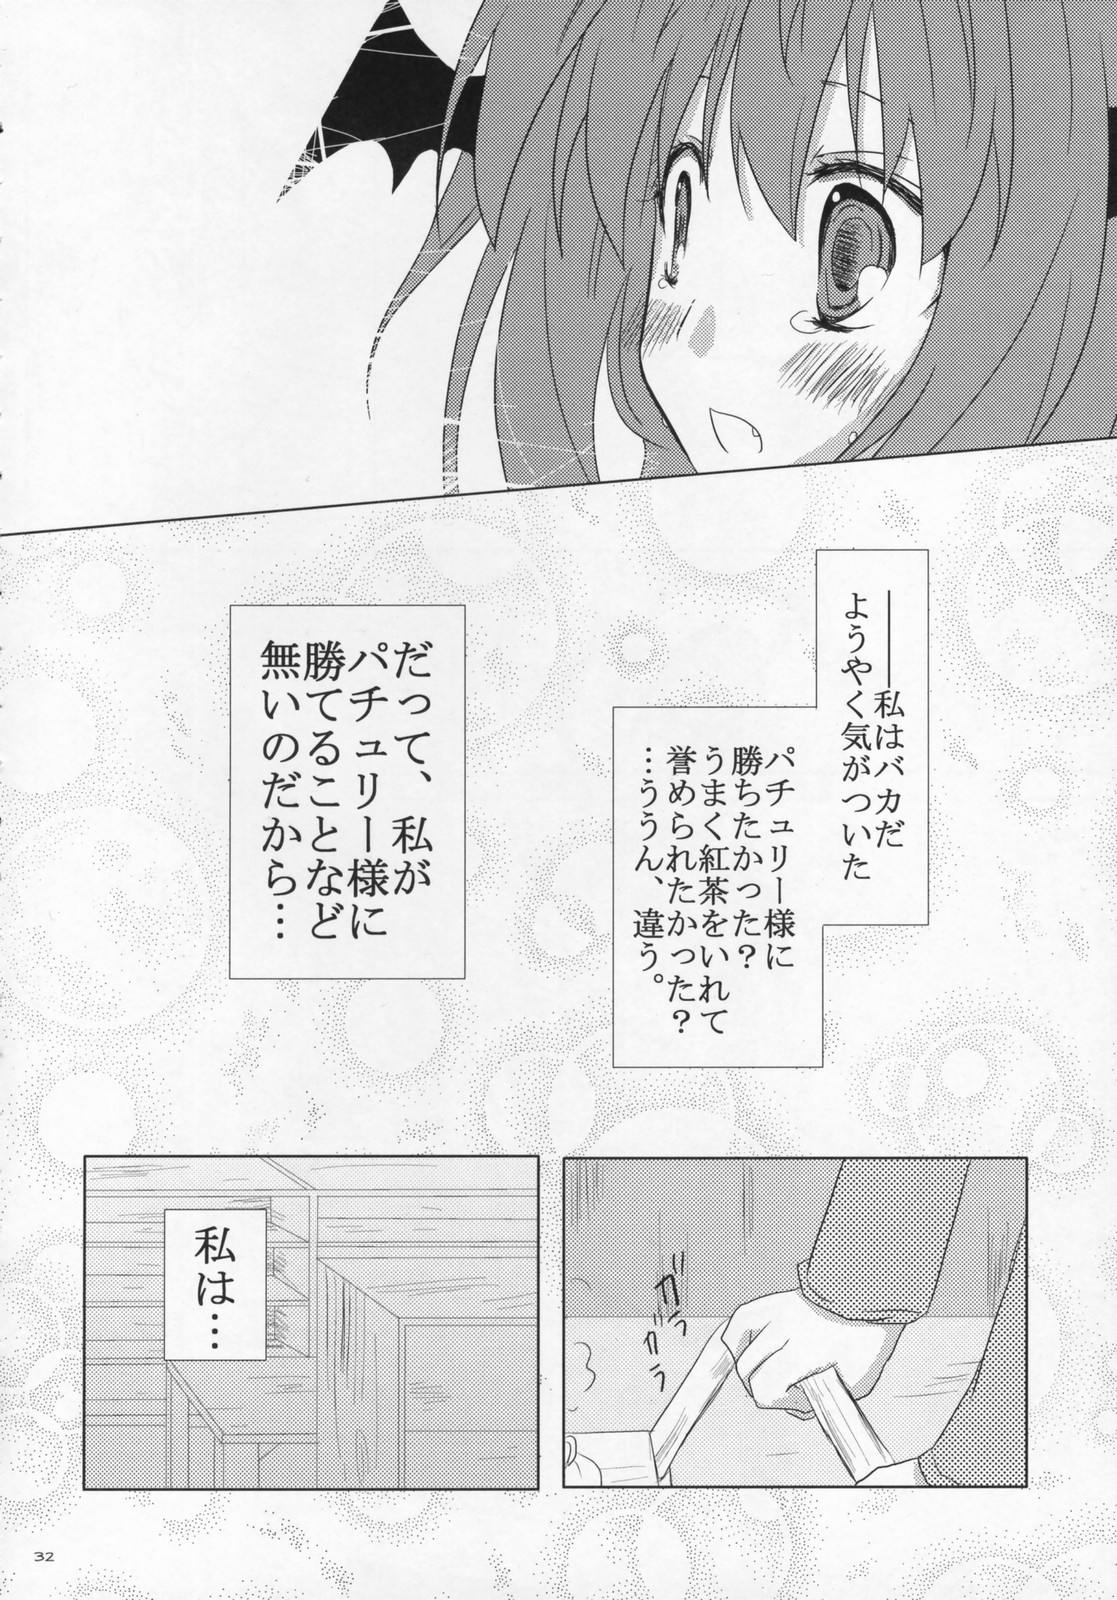 [Oppai-Bloomer!] Love-chuchu-GOGO-2! (Touhou Project) page 31 full